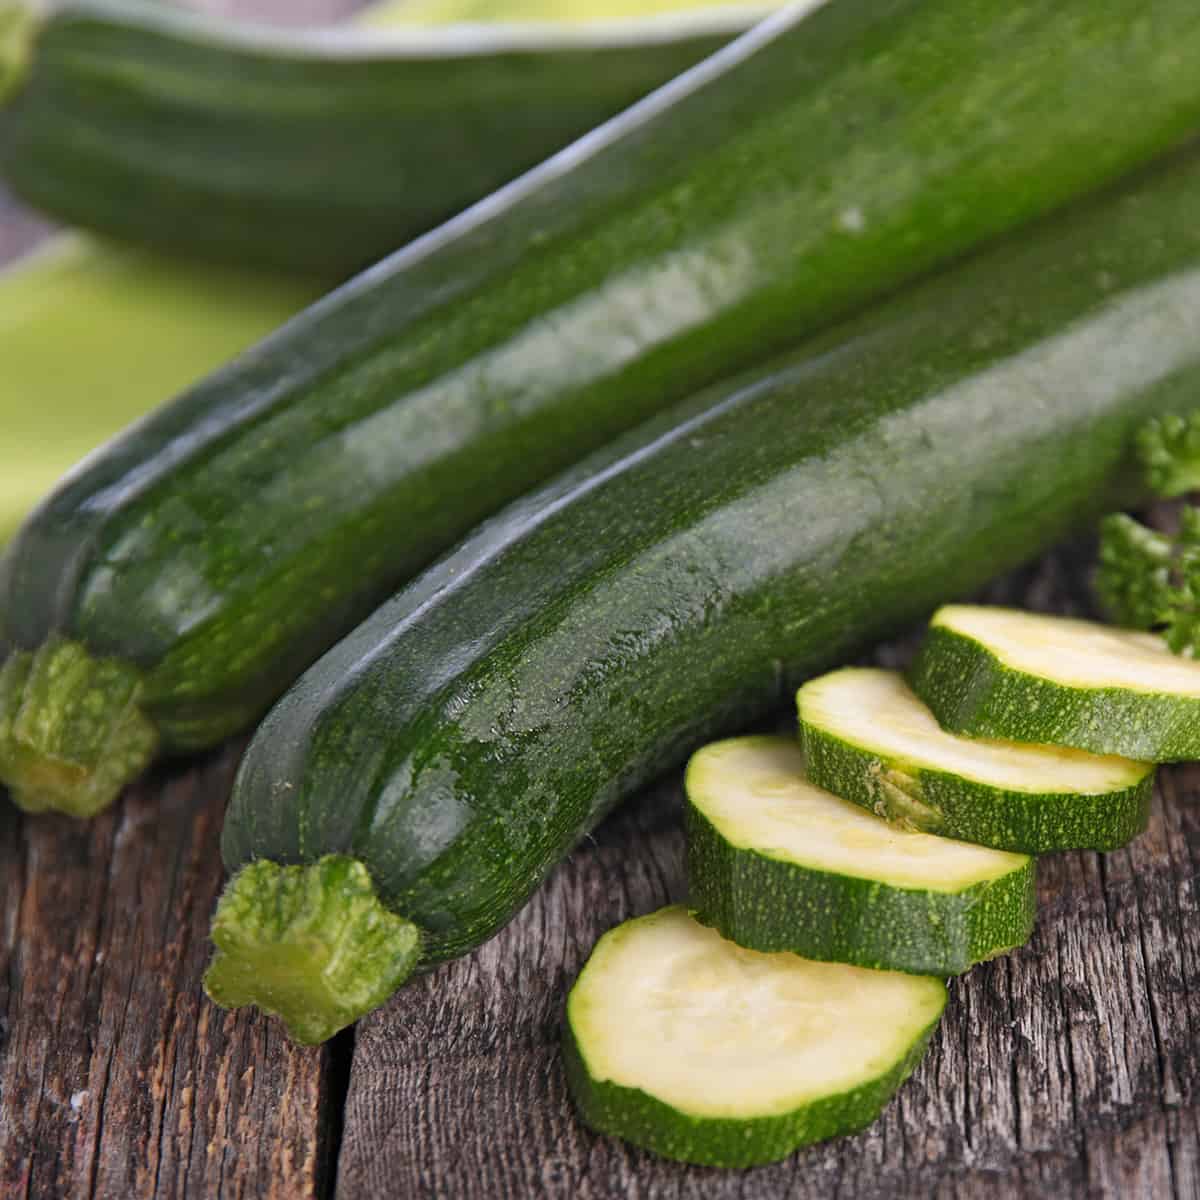 25 Ways to Preserve Zucchini